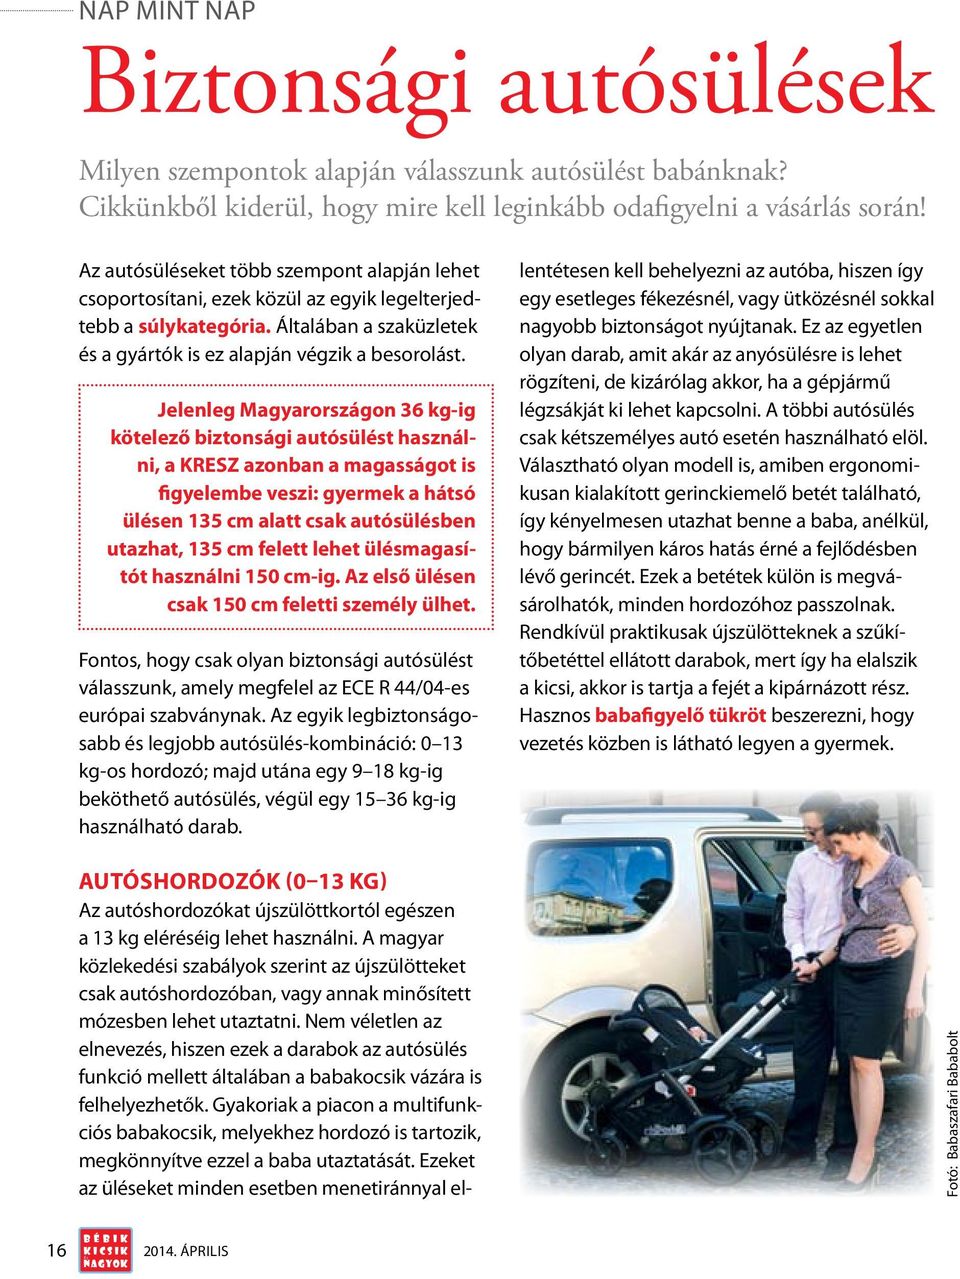 Jelenleg Magyarországon 36 kg-ig kötelező biztonsági autósült használni, a KRESZ azonban a magasságot is figyelembe veszi: gyermek a hátsó ülen 135 cm alatt csak autósülben utazhat, 135 cm felett